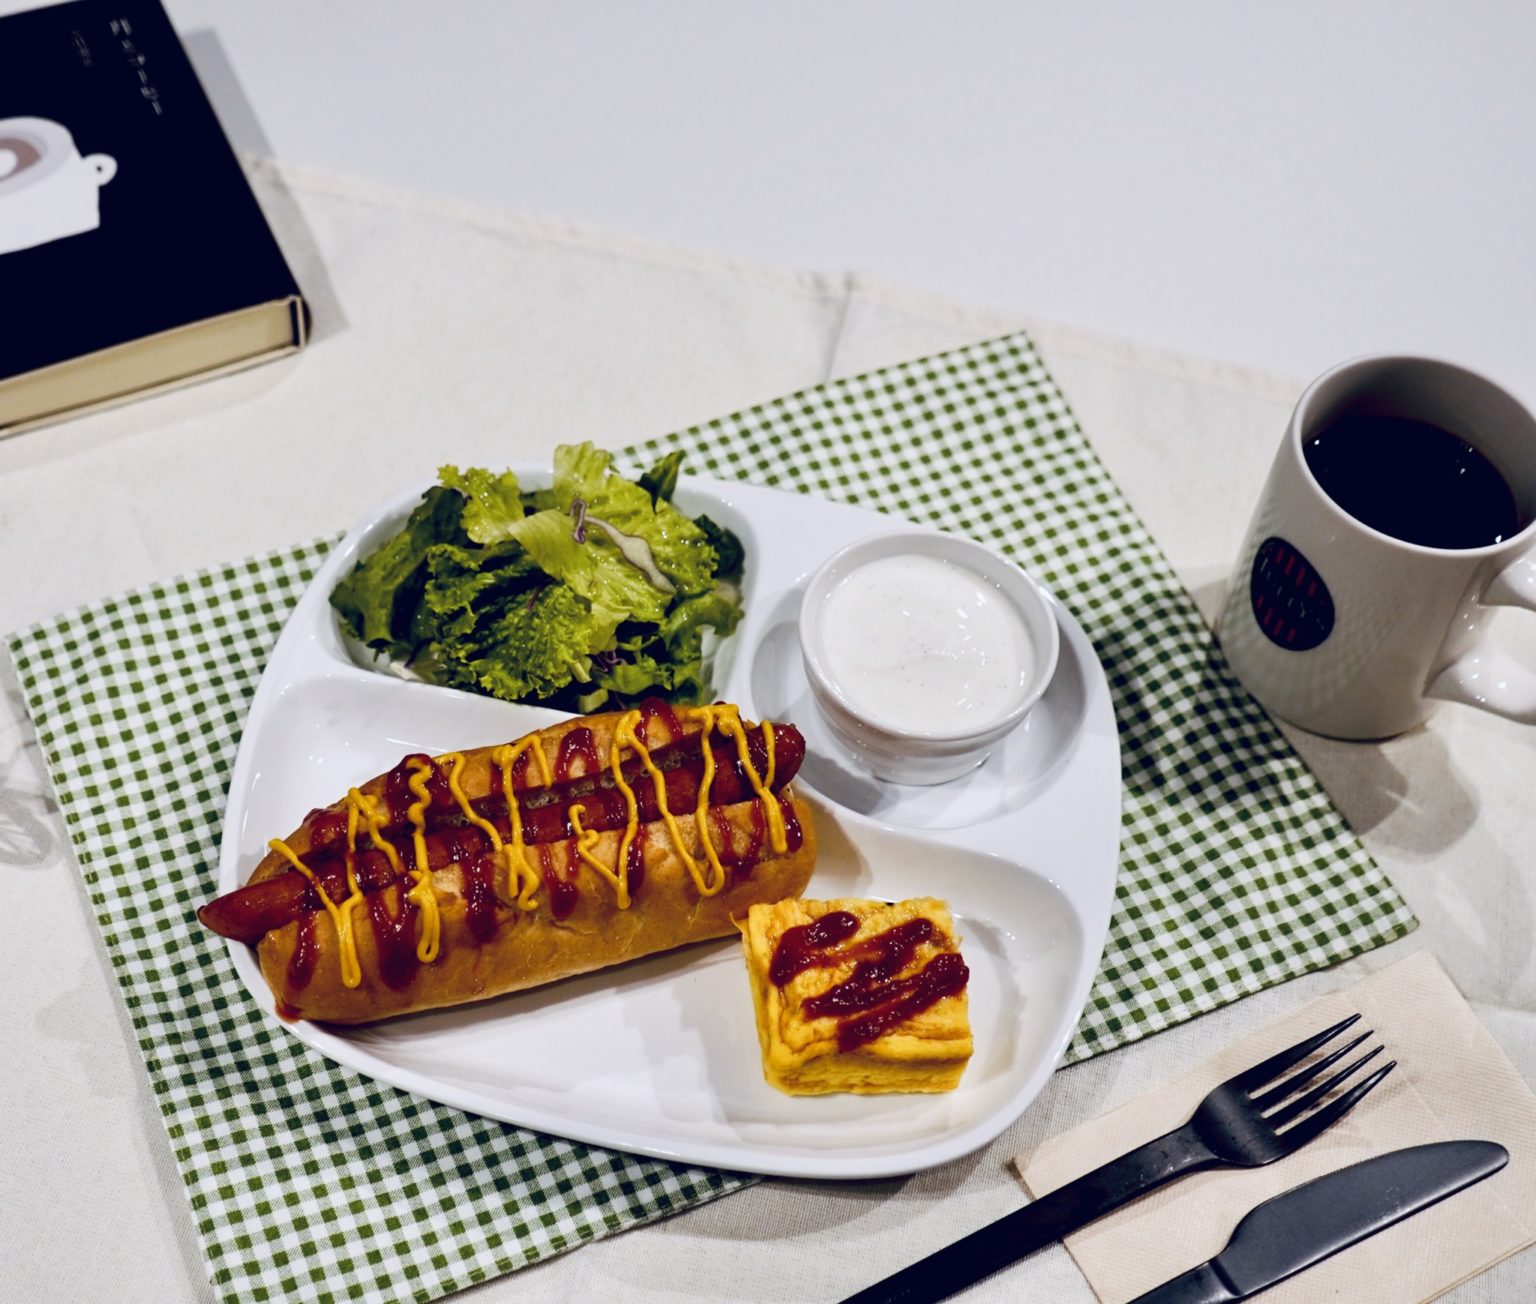 〈タリーズコーヒー〉 の「Tully’s Breakfast Plate」847円。